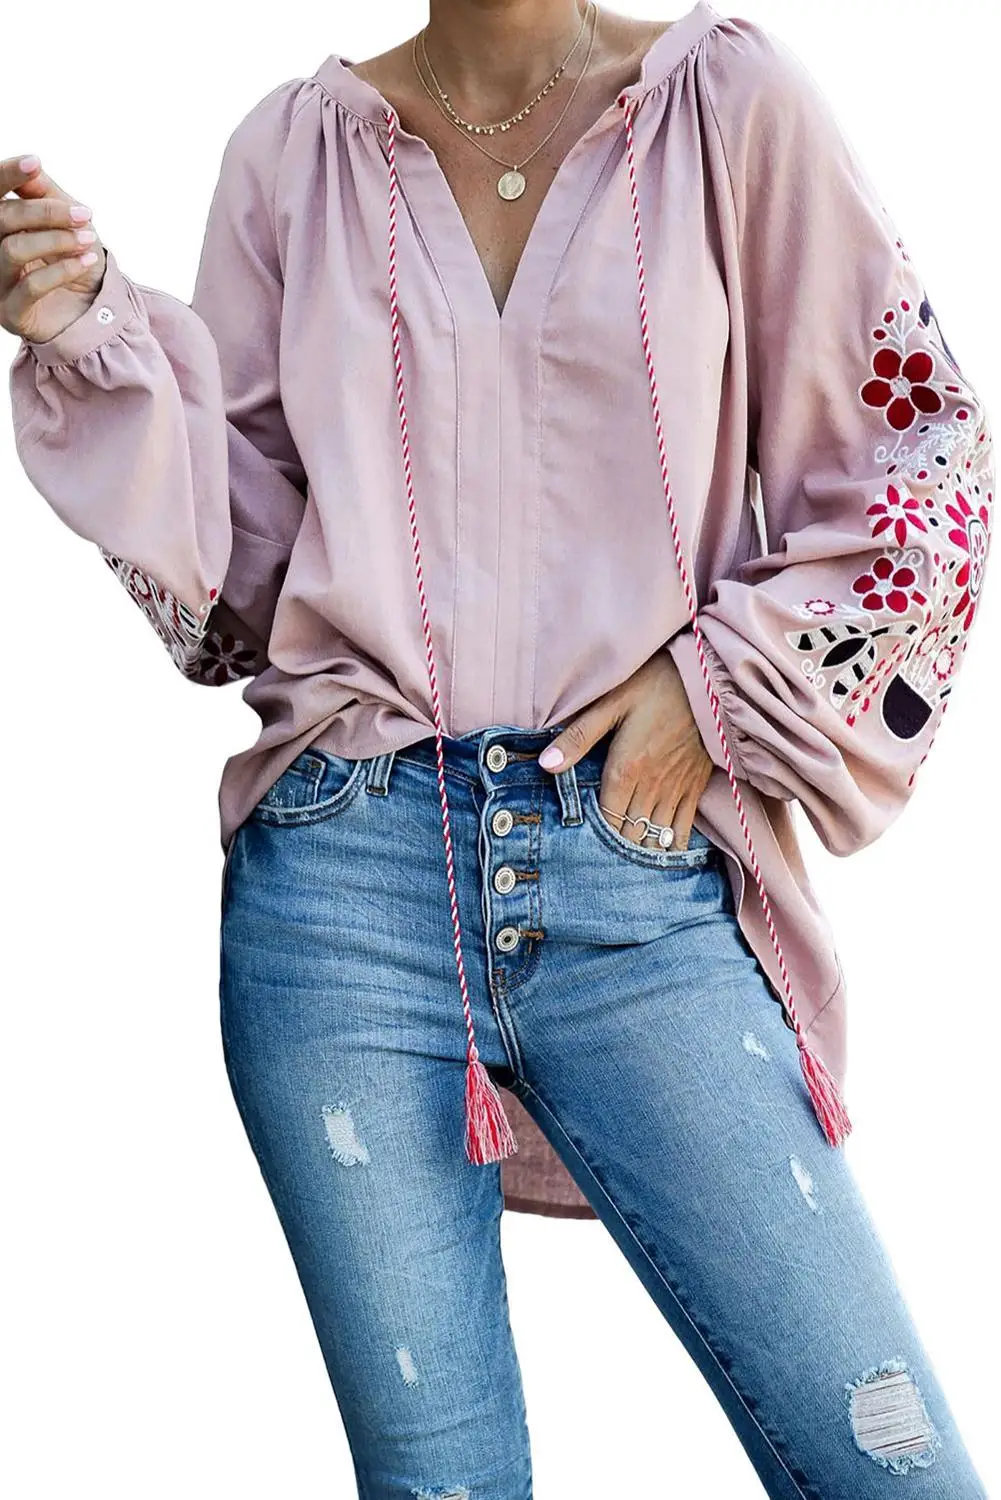 Зеленая/черная/синяя/Розовая Расслабляющая облегающая блузка с цветочной вышивкой в крестьянском стиле, Женская Повседневная Свободная Осенняя блузка с длинными рукавами - Цвет: Розовый